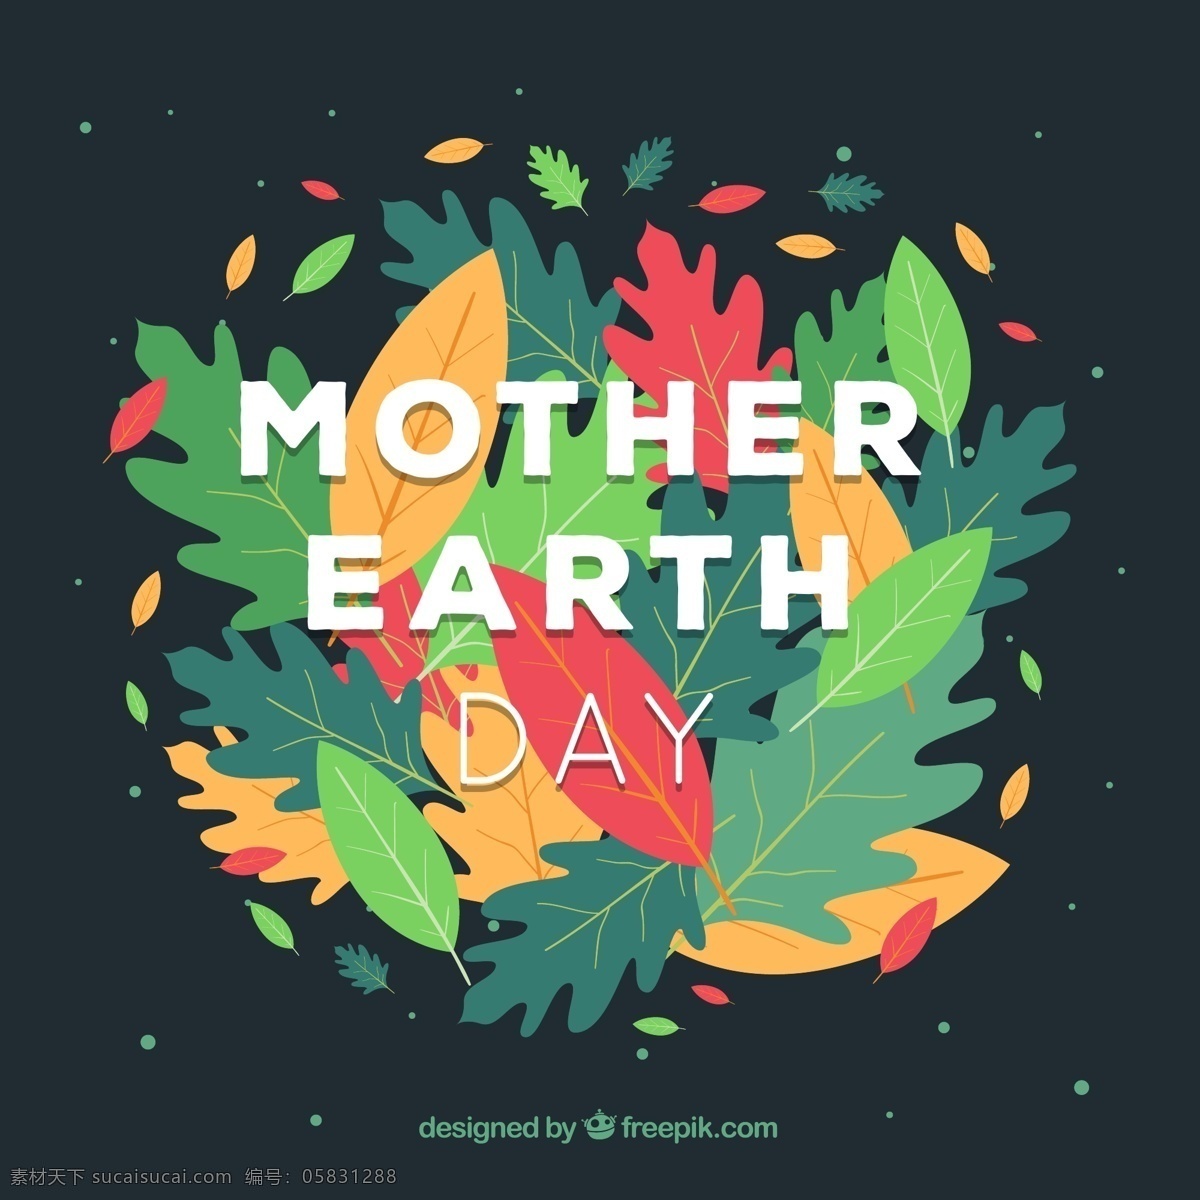 彩色 世界 地球日 落叶 mother earth day 世界地球日 树叶 植物 文化艺术 节日庆祝